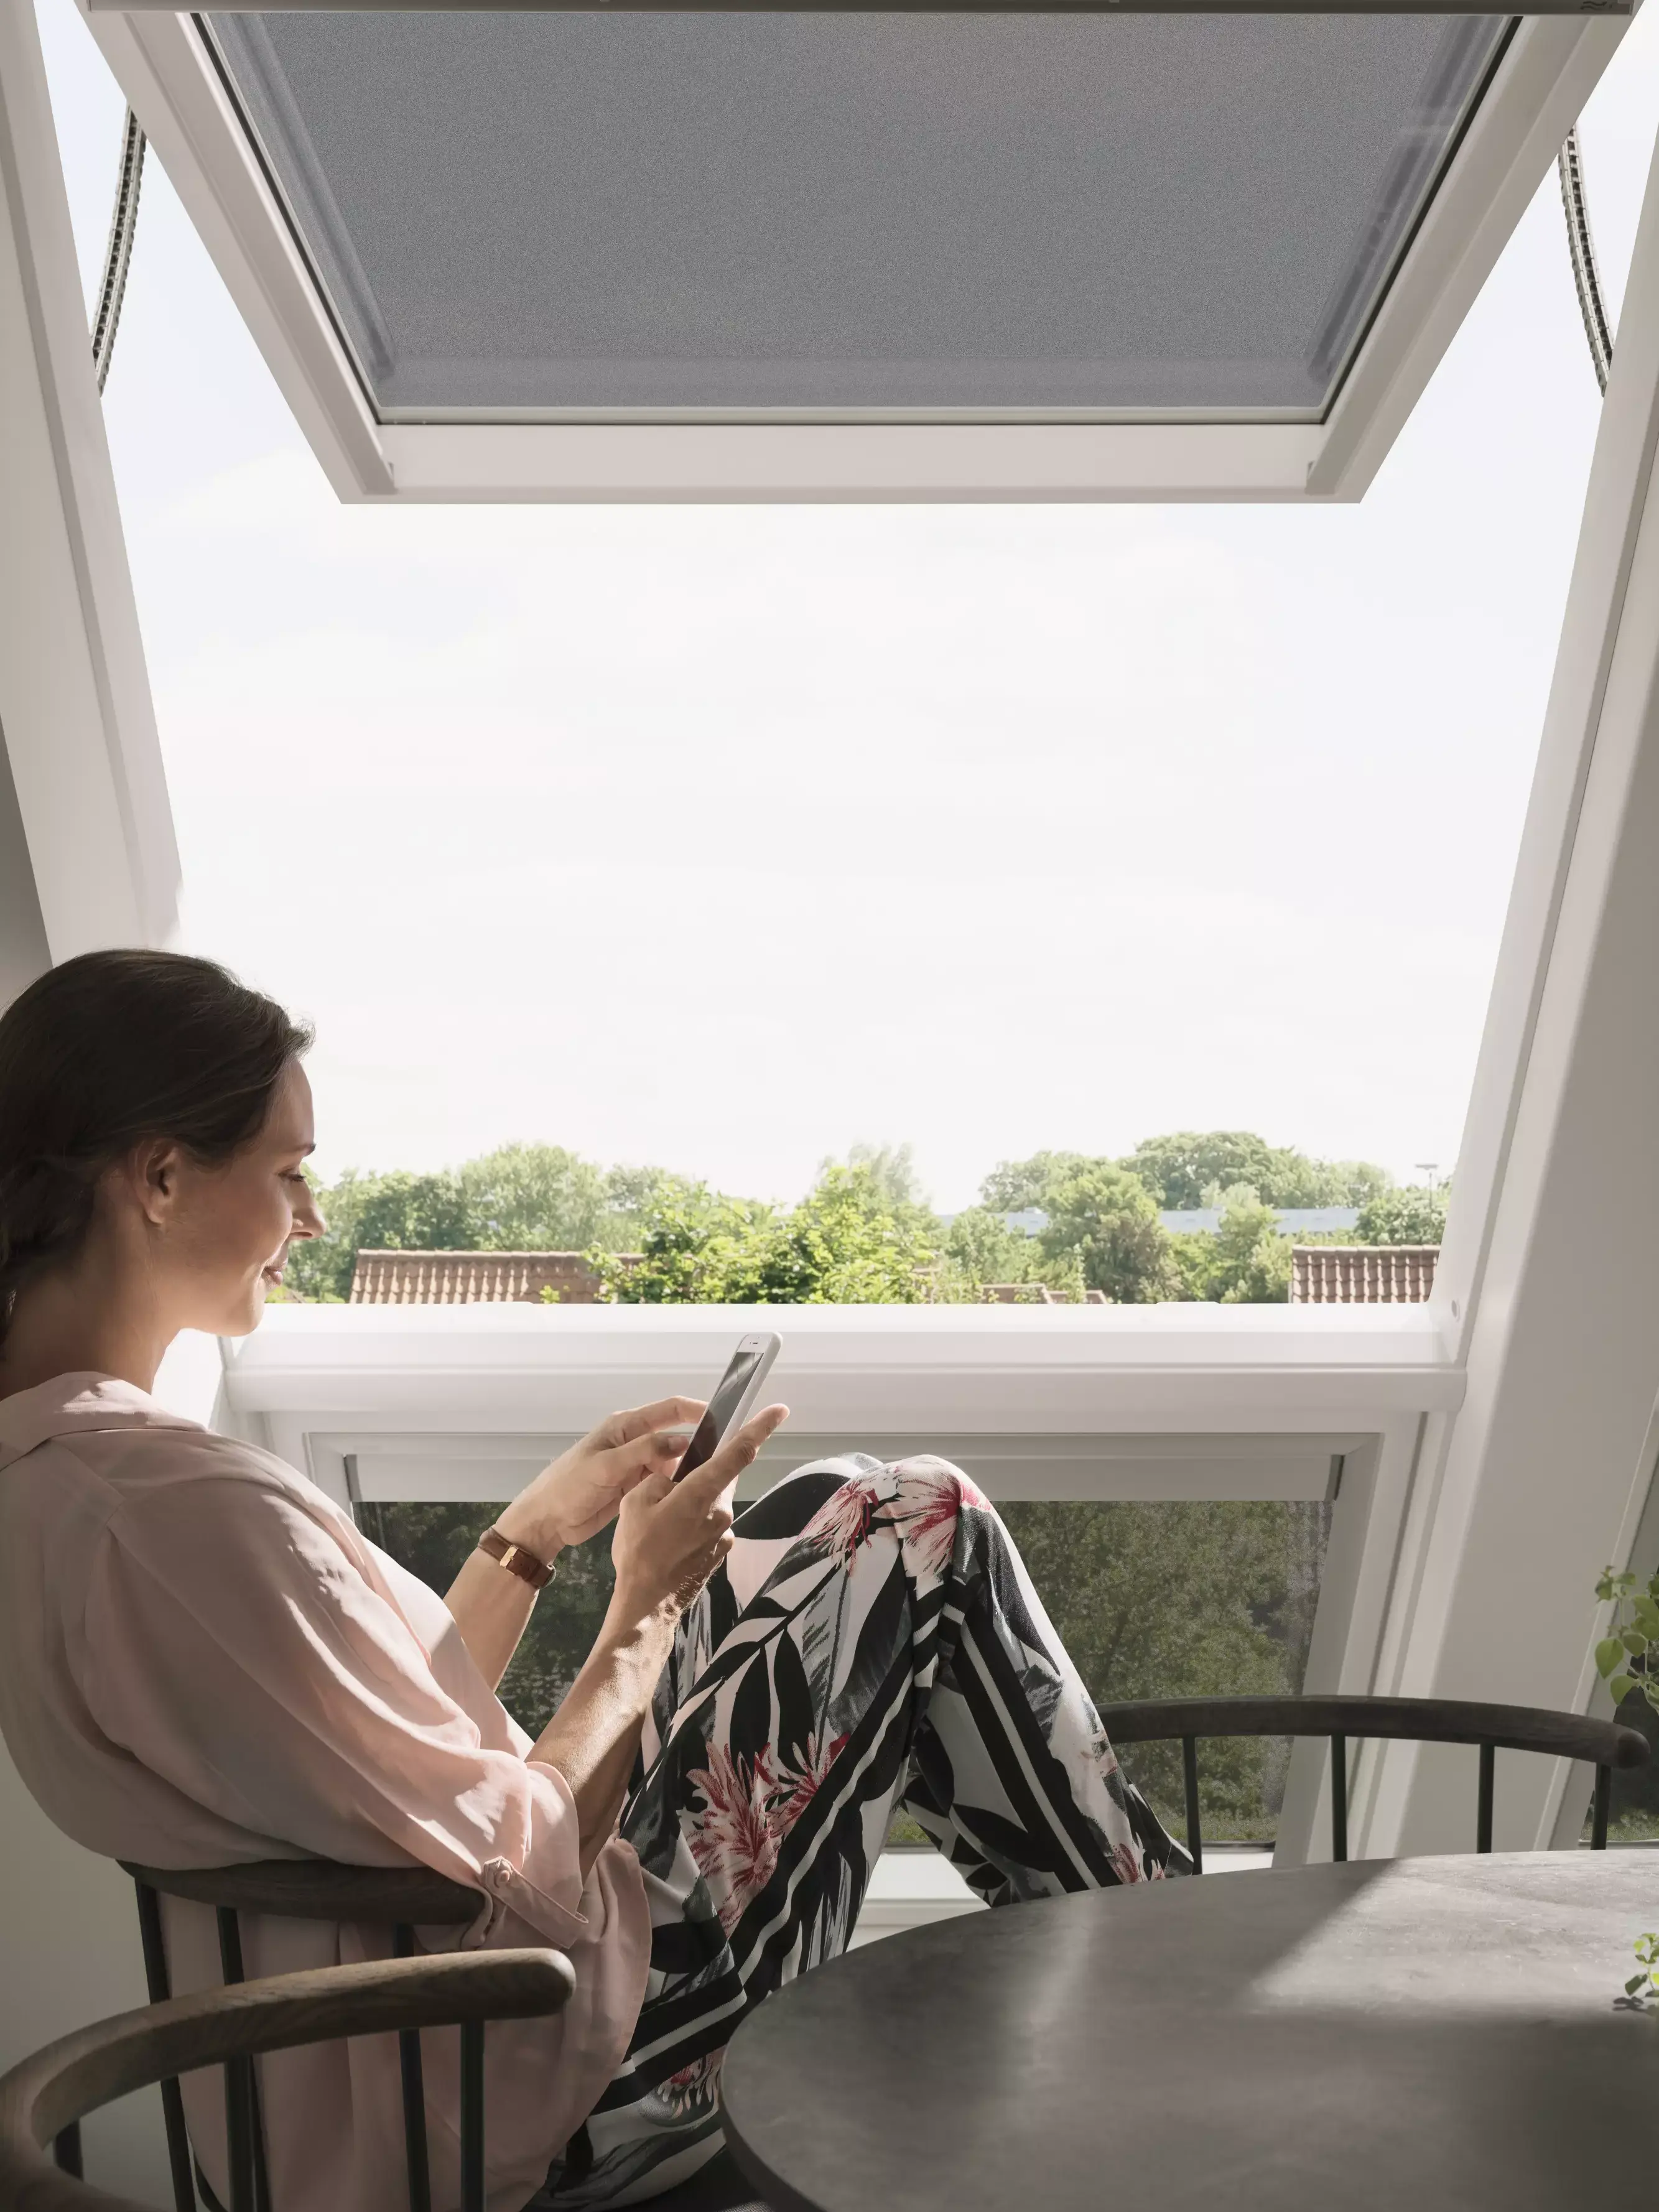 Chambre de comble confortable avec lumière naturelle d'une fenêtre de toit VELUX, meublée pour la détente.